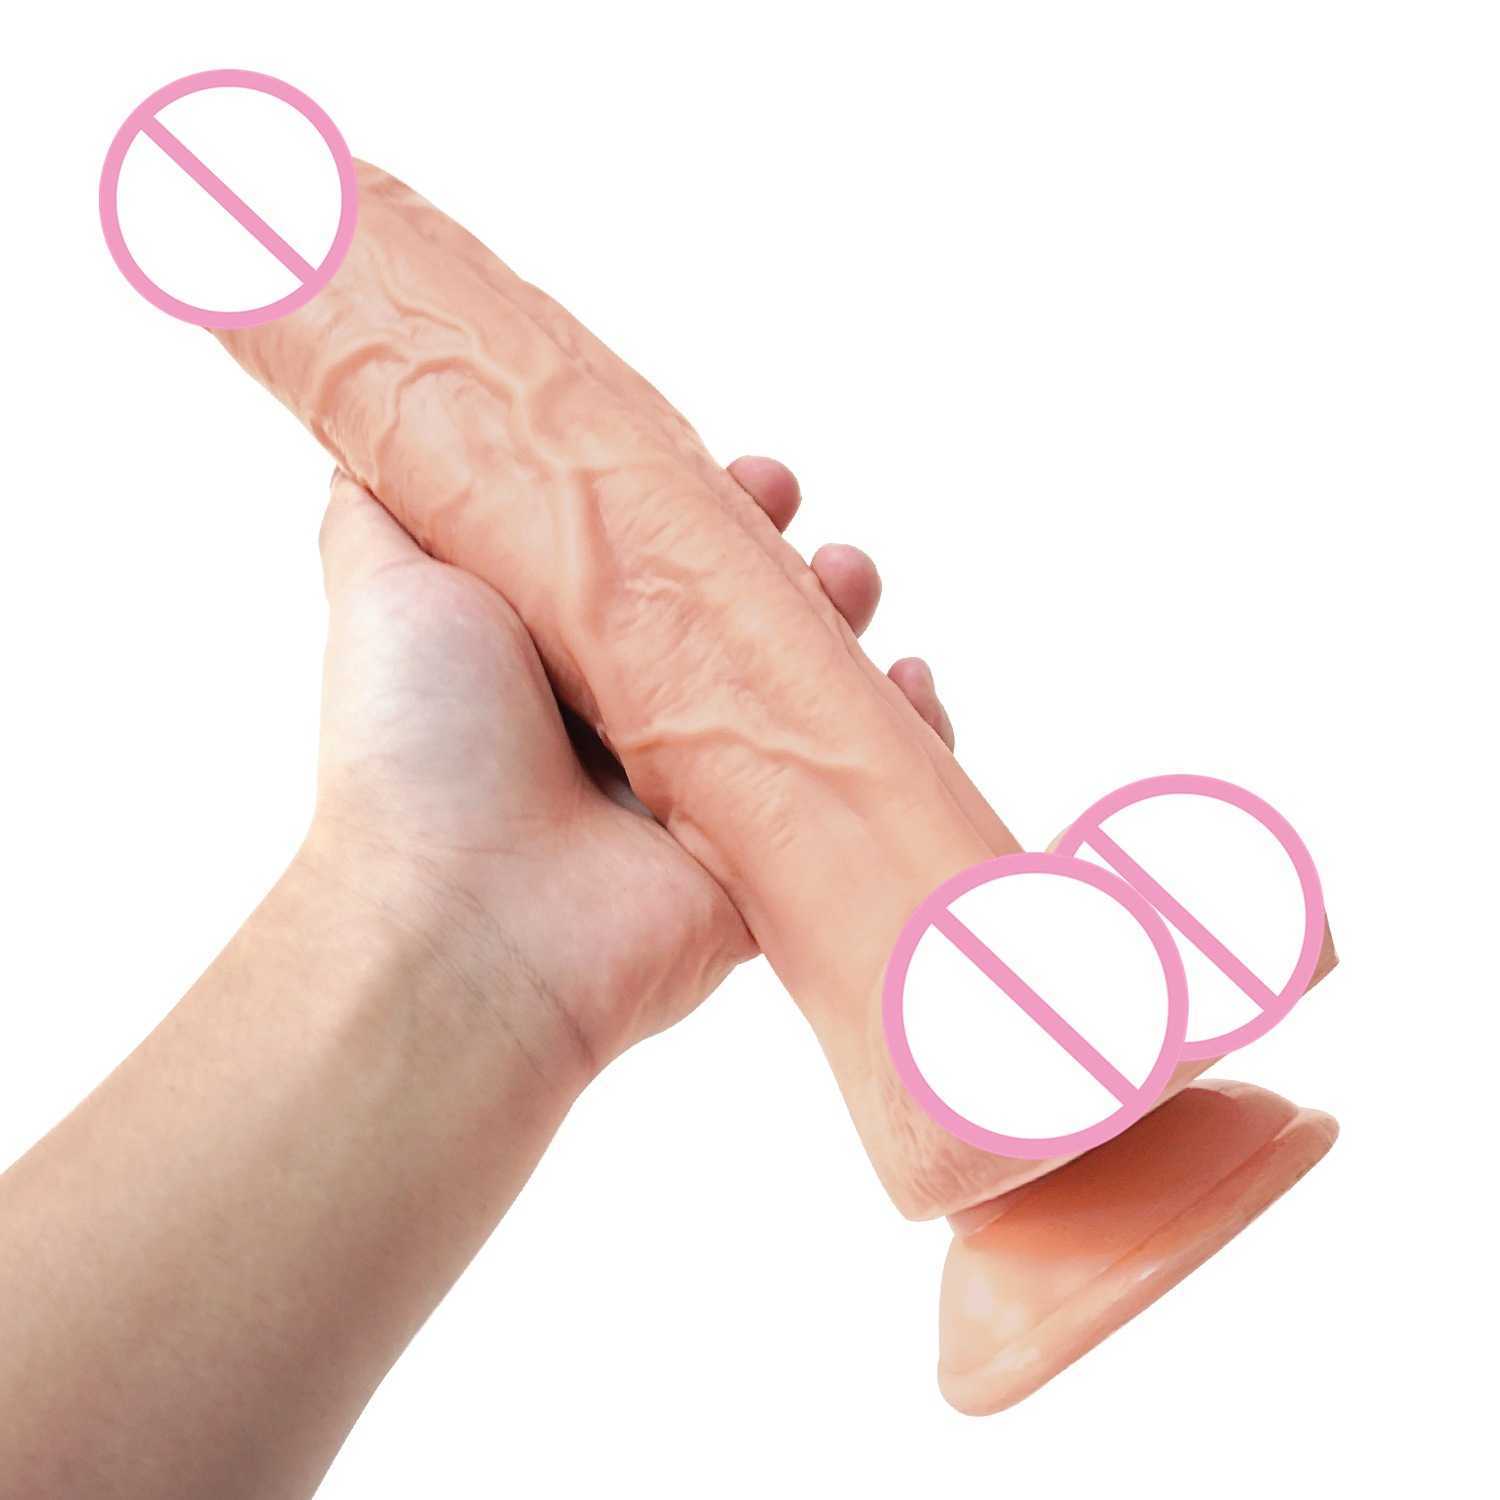 Moos-Saugnapf-Simulation, weiblicher G-Punkt-Vibrator, flirtend, Sexprodukte für Erwachsene. 75 % Rabatt auf Online-Verkäufe